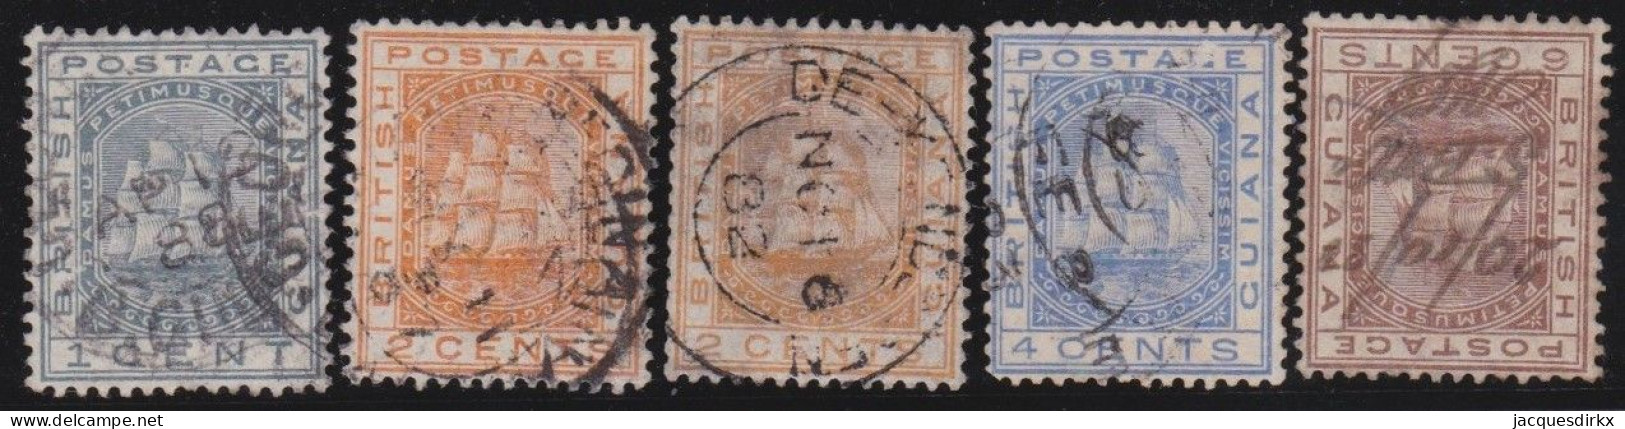 British  Guiana         .   SG    .   170/173      .     O (172: Minor Thin Spot)      .    Cancelled - Guayana Británica (...-1966)